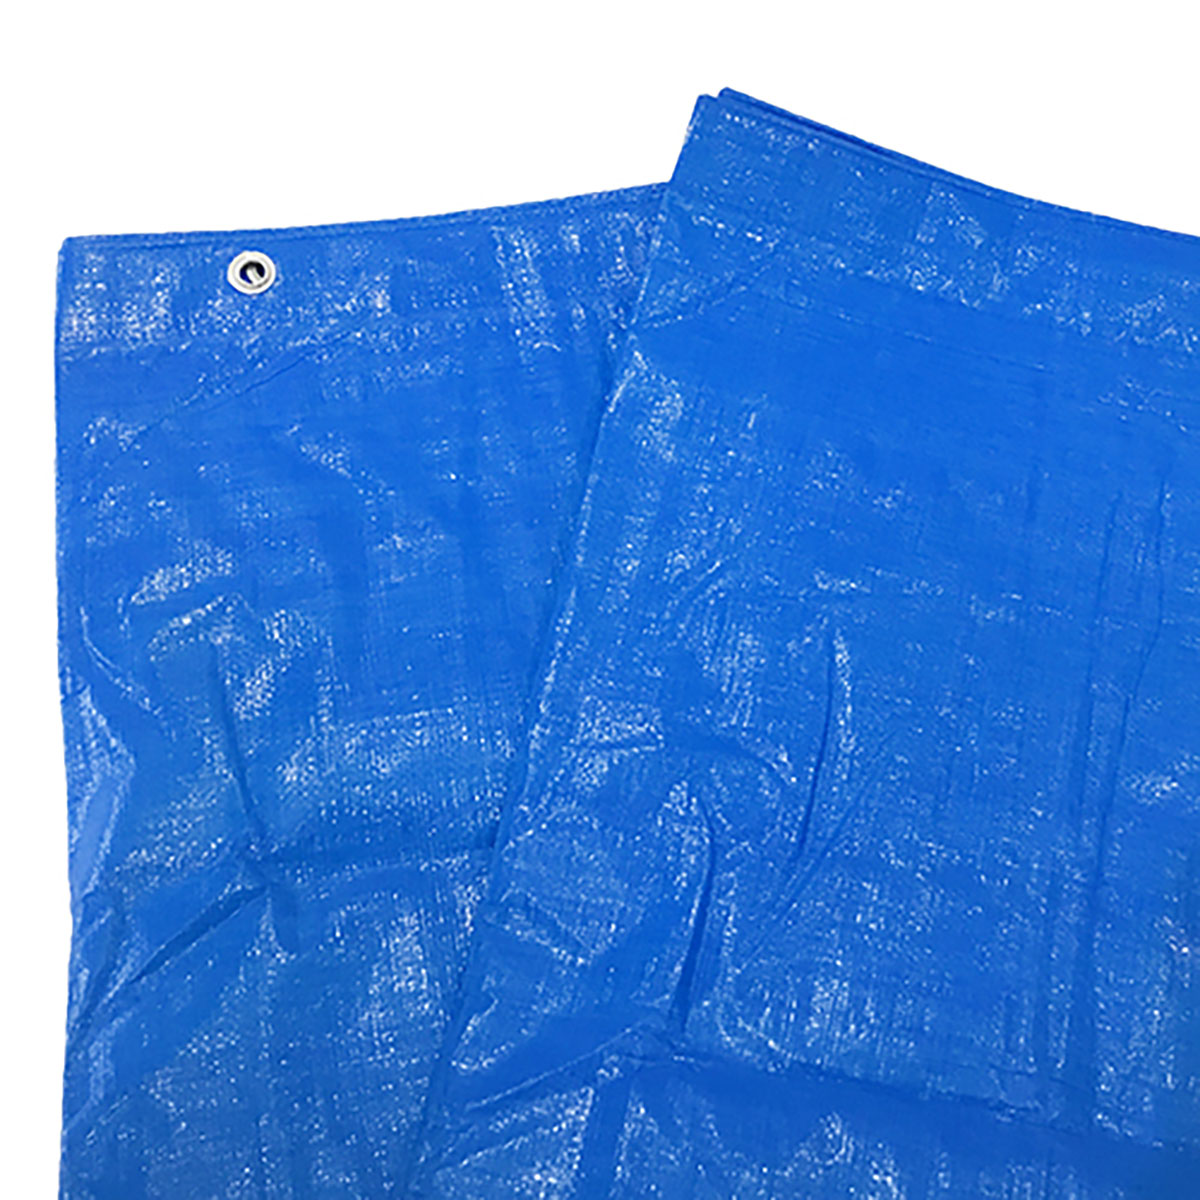 ブルーシート 巾約4.3×長さ約5.2m #3000